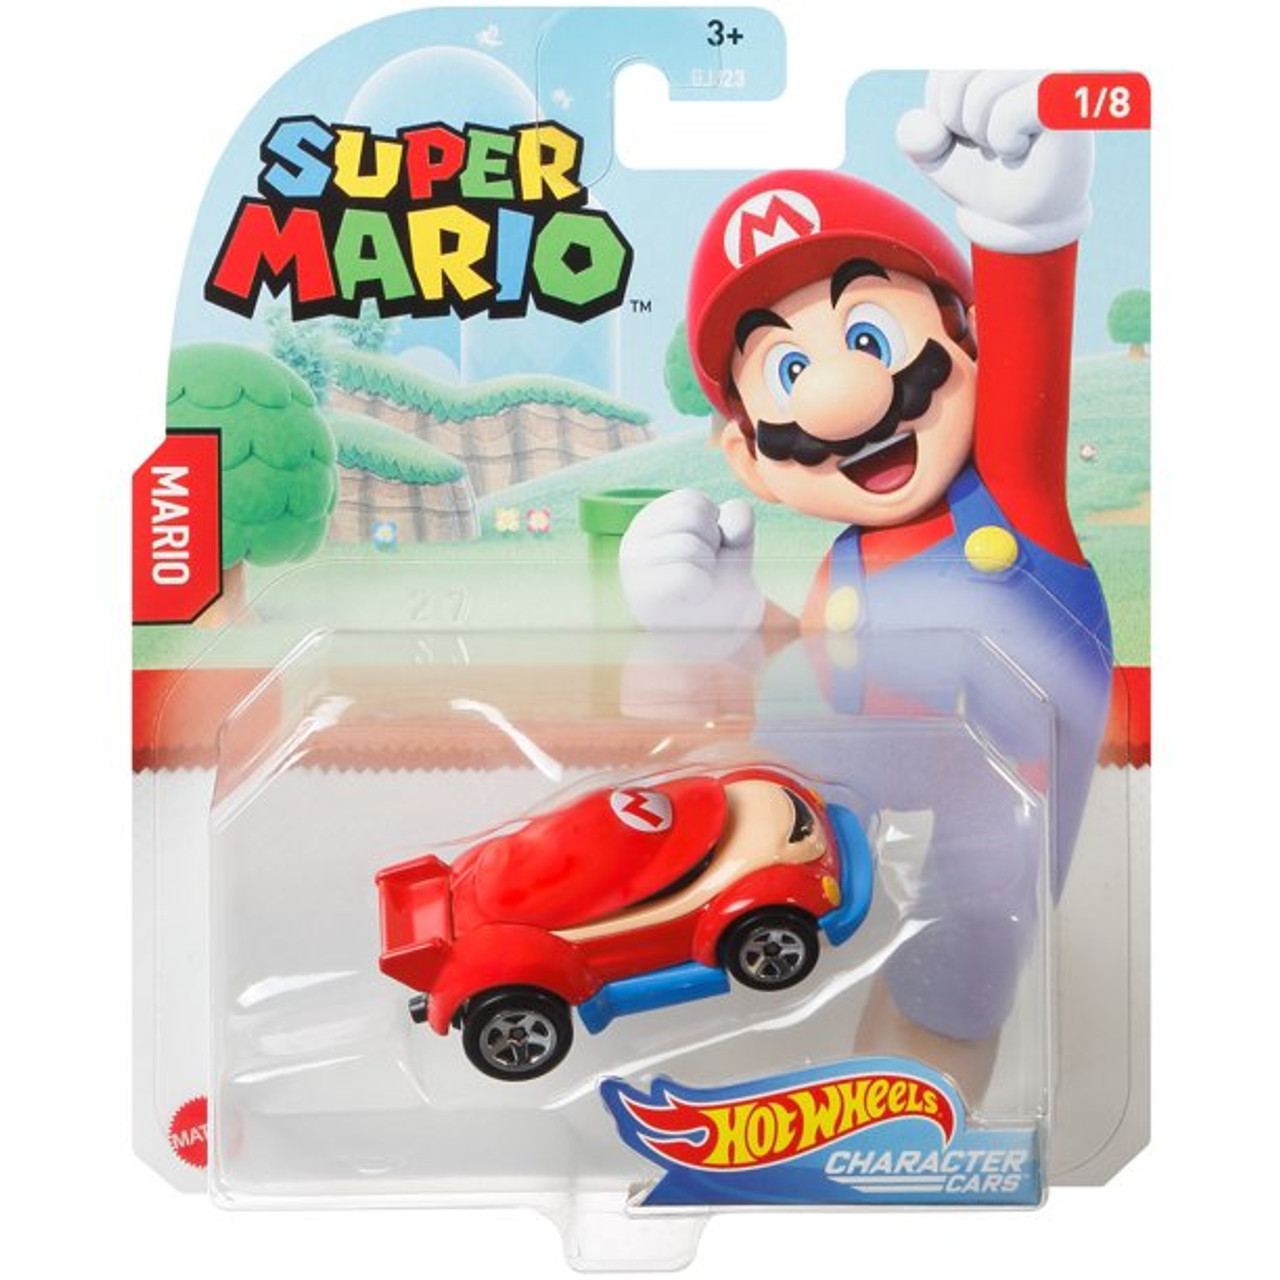 TOYBARN : Hot Wheels Mario Character Car